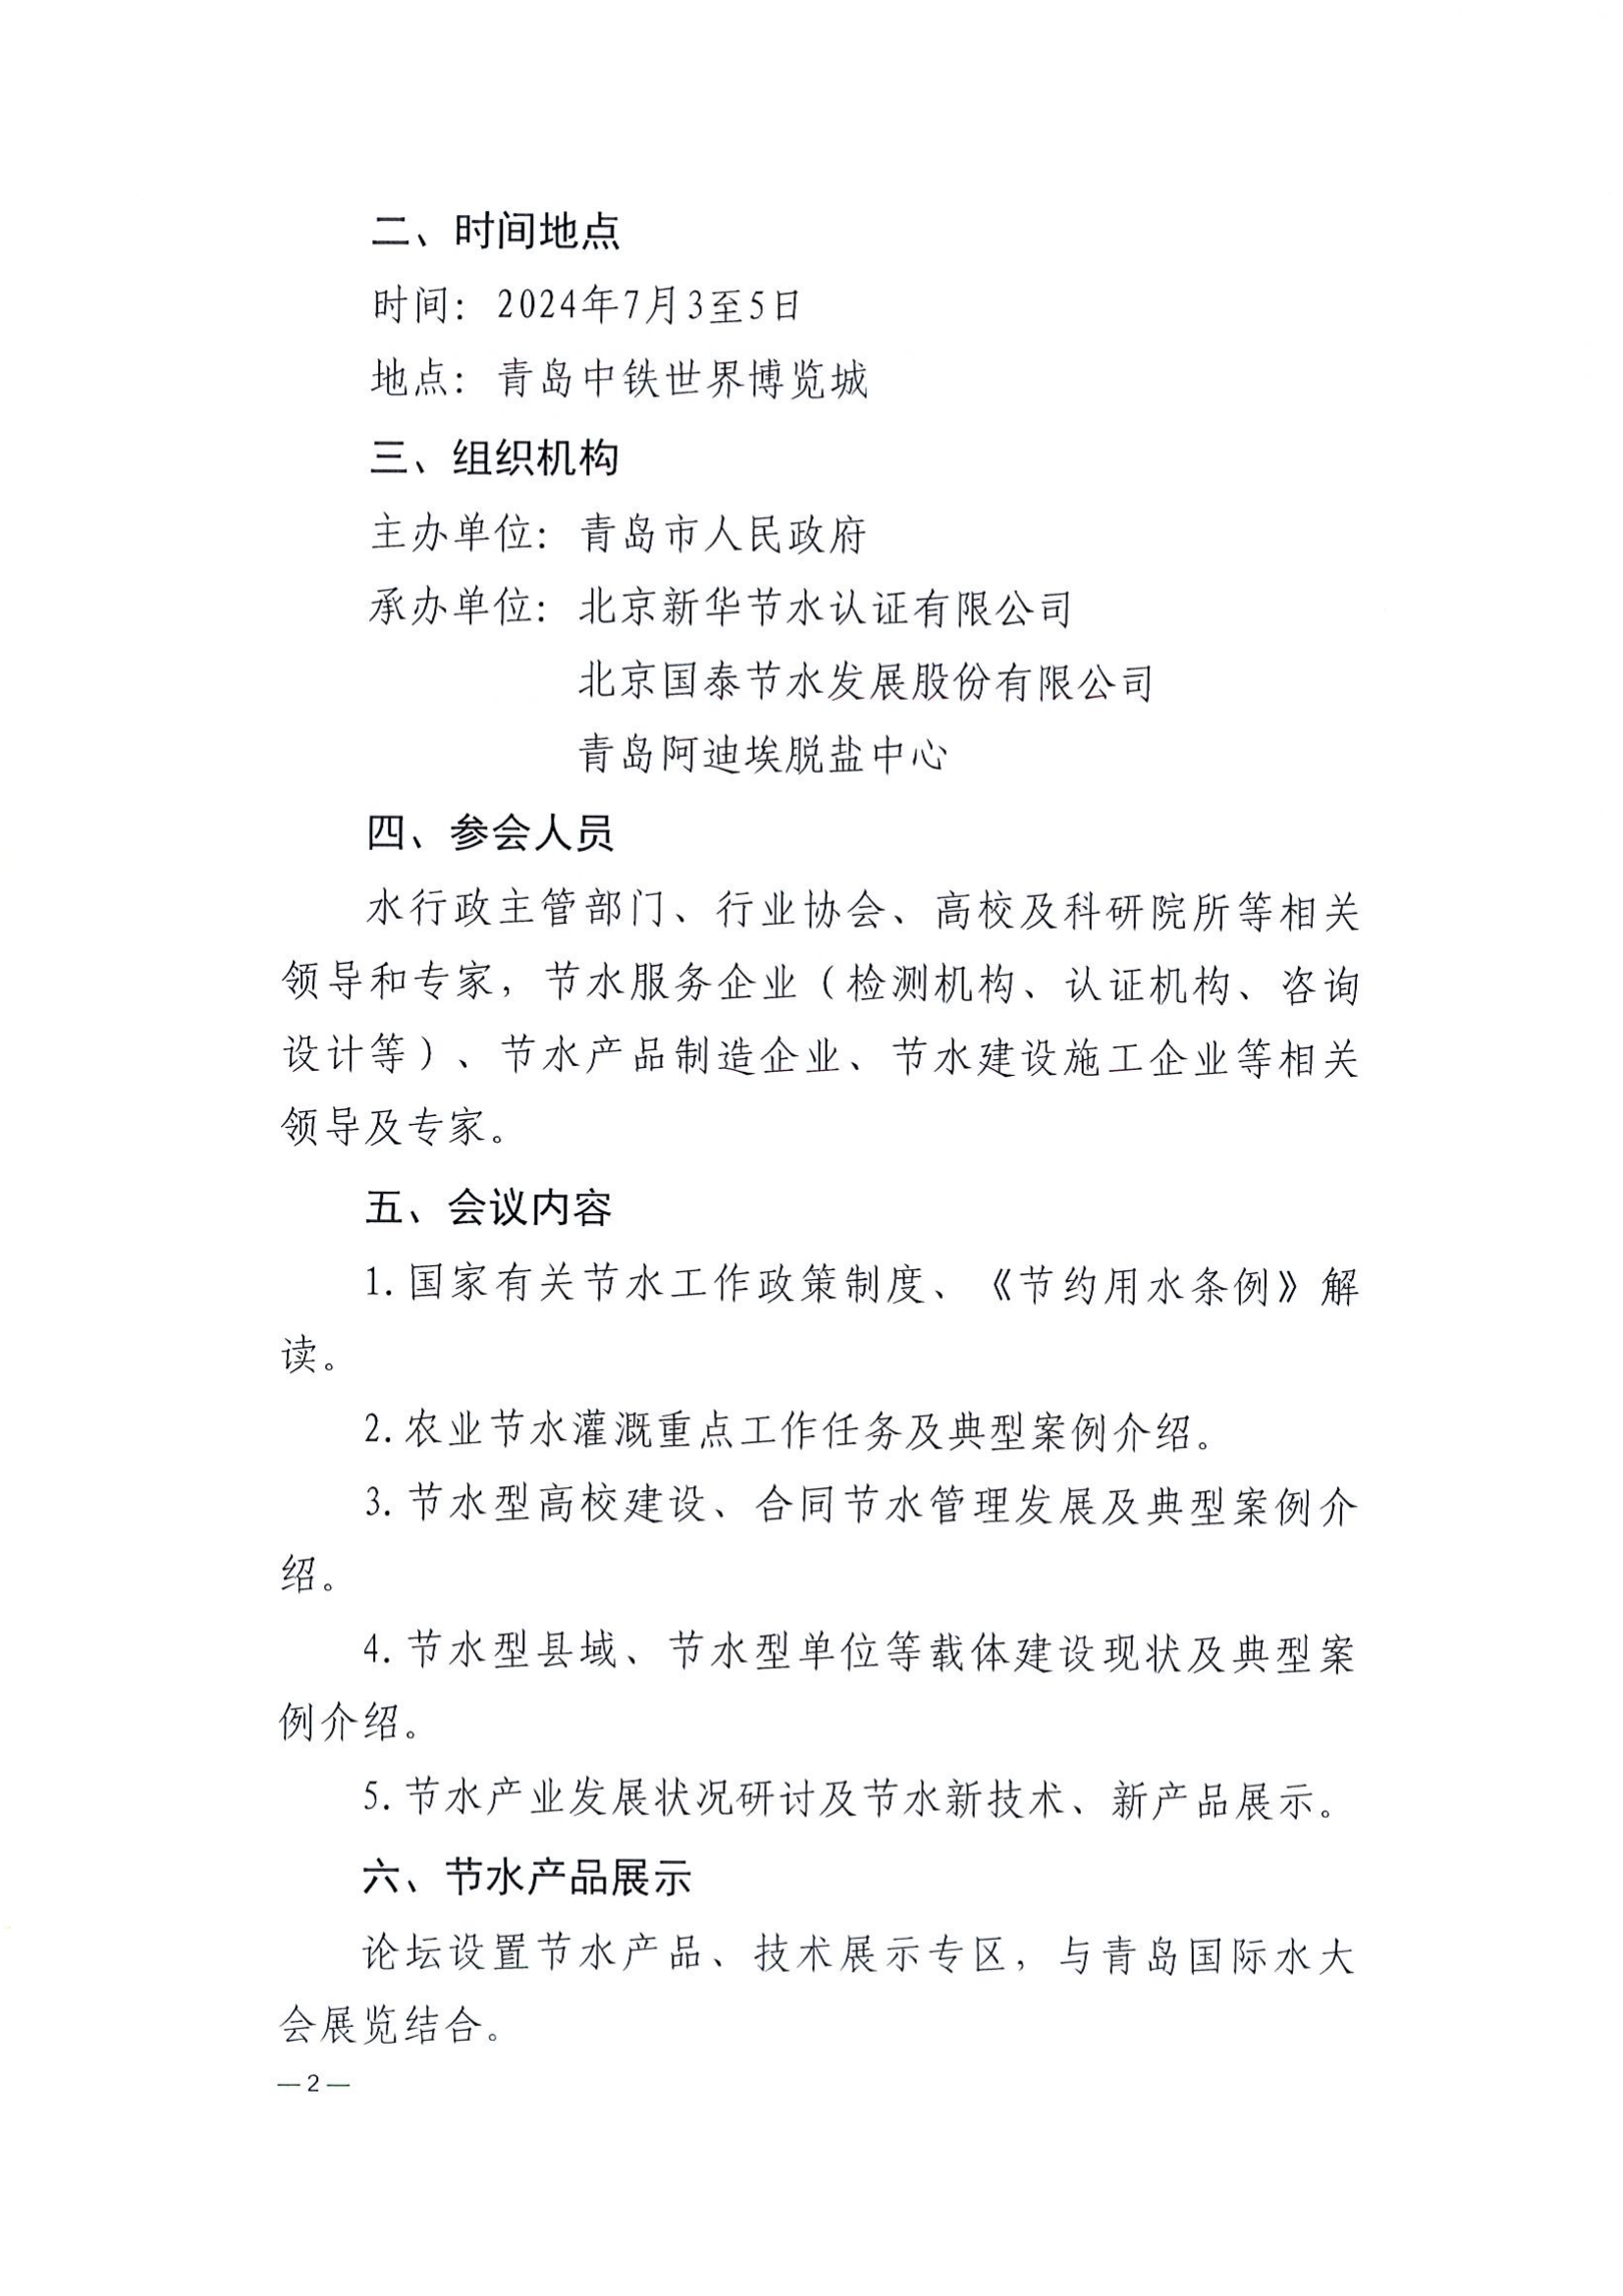 北京新华节水认证有限公司关于召开节水产业发展论坛的通知_01.png